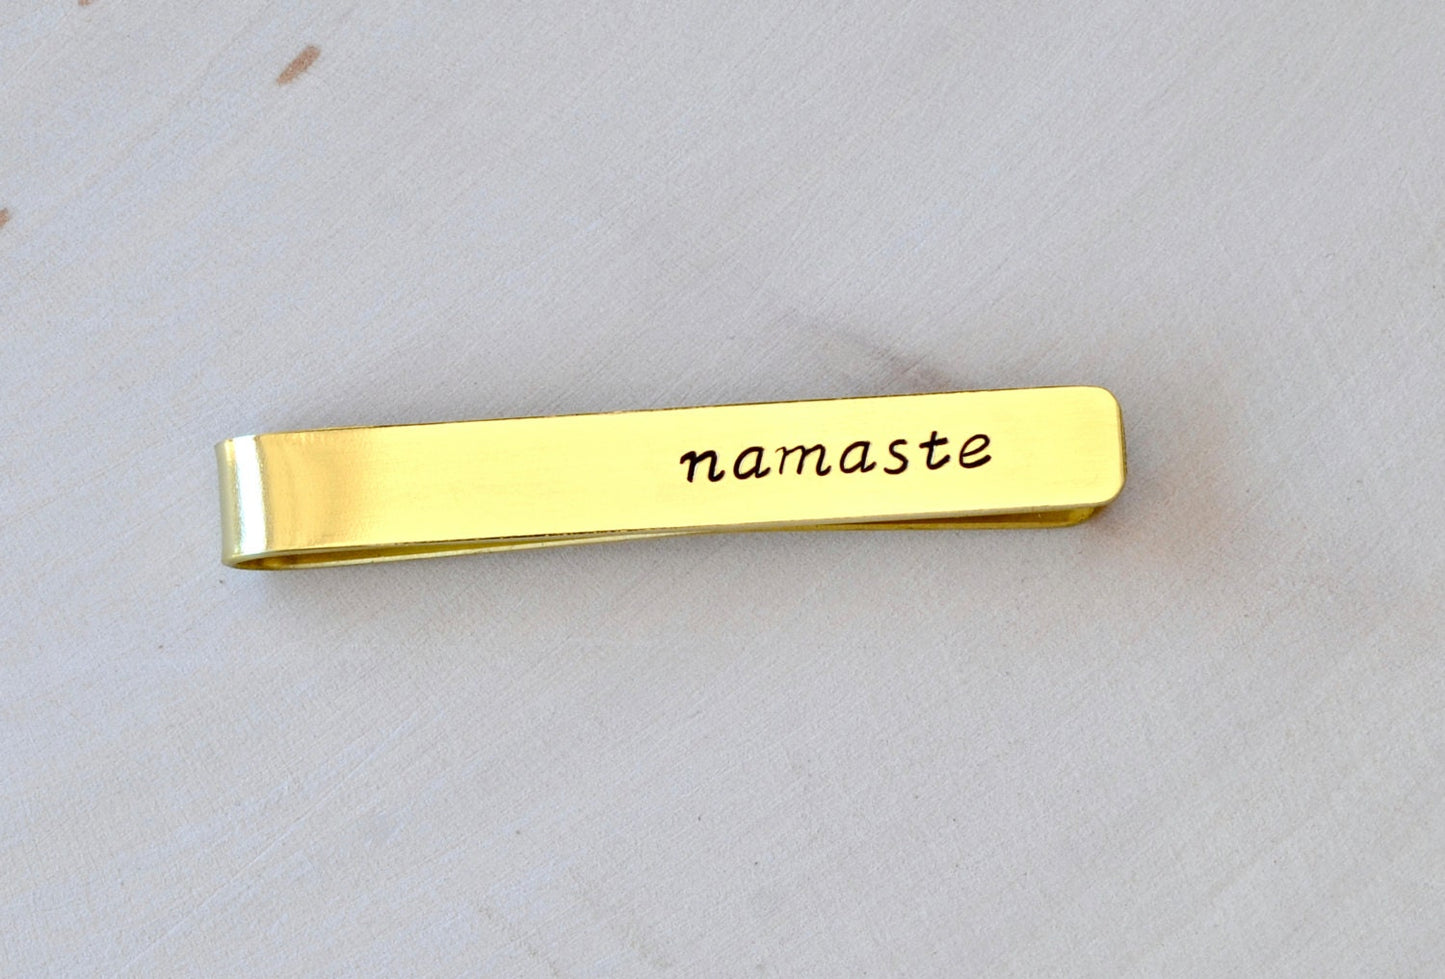 Brass Tie Bar with Namaste